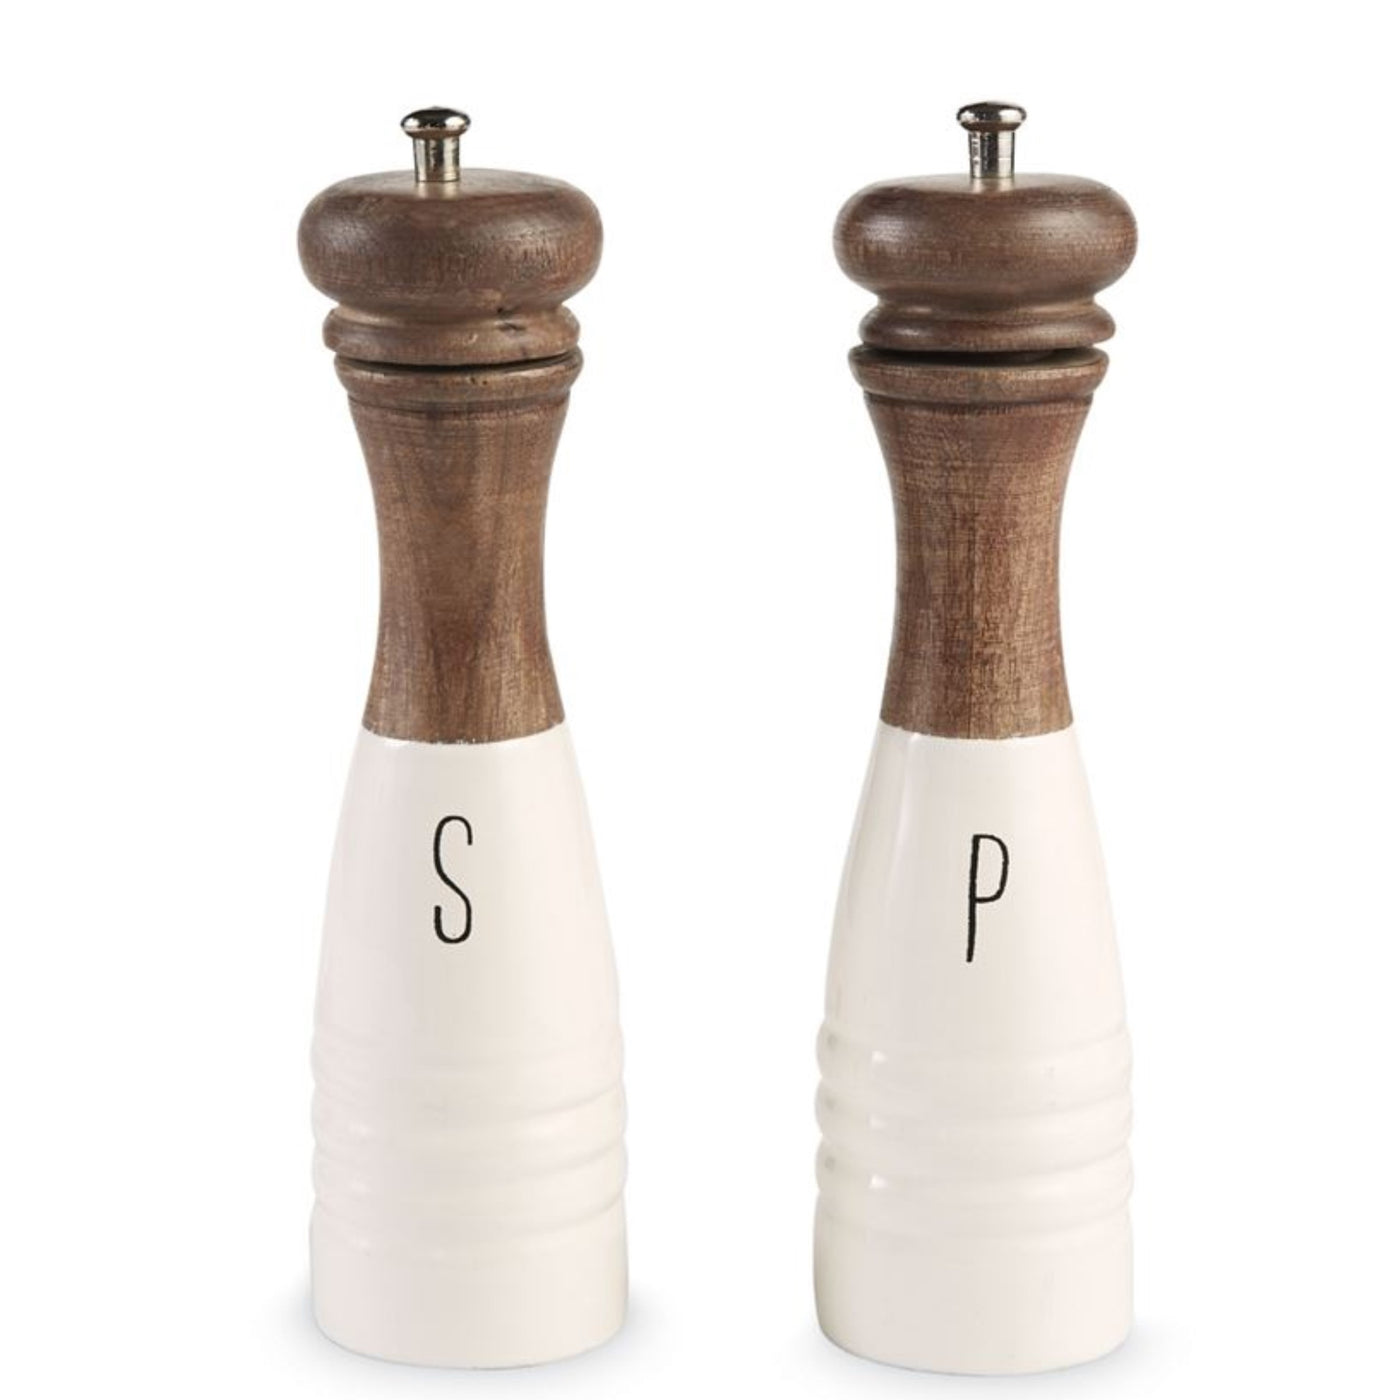 salt and pepper grinders sets